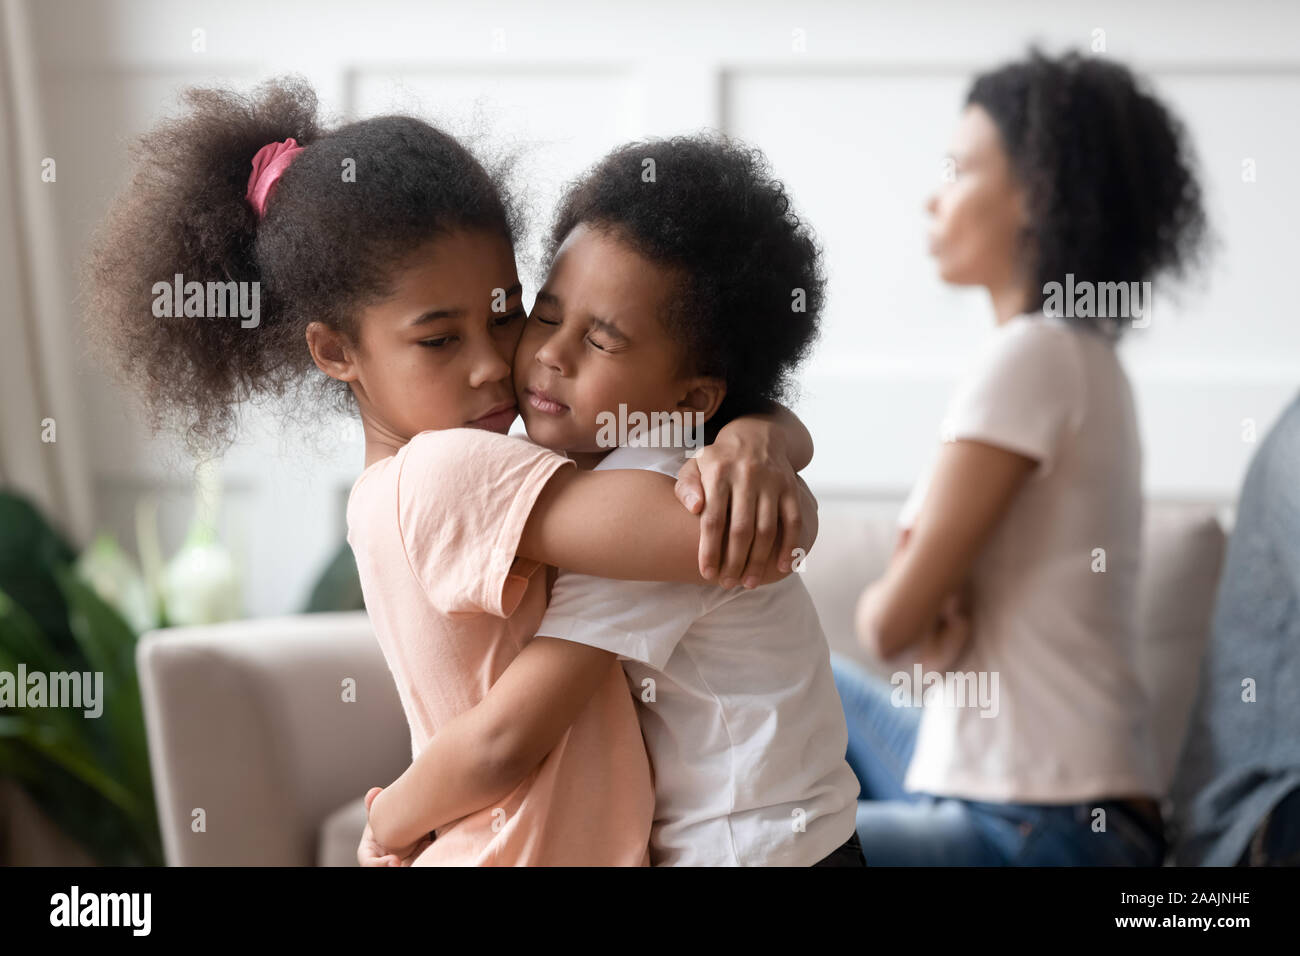 Piccoli bambini africani abbracciando passando attraverso il divorzio dei genitori insieme Foto Stock